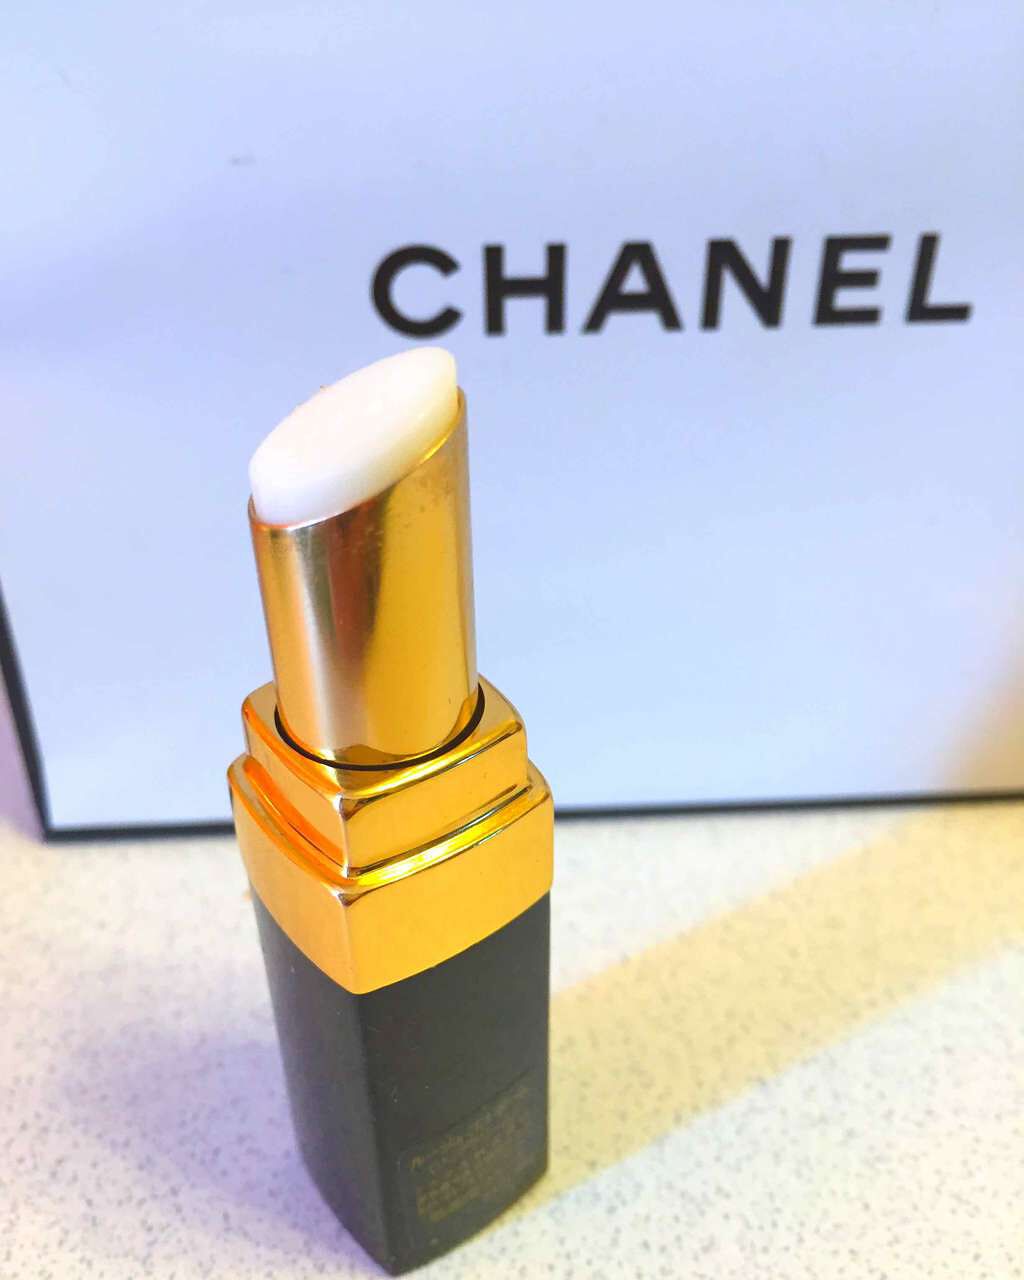 ルージュ ココ ボーム Chanelの口コミ Chanelのリップクリーム 匂いはなく By Sparkle Gloss311 代後半 Lips